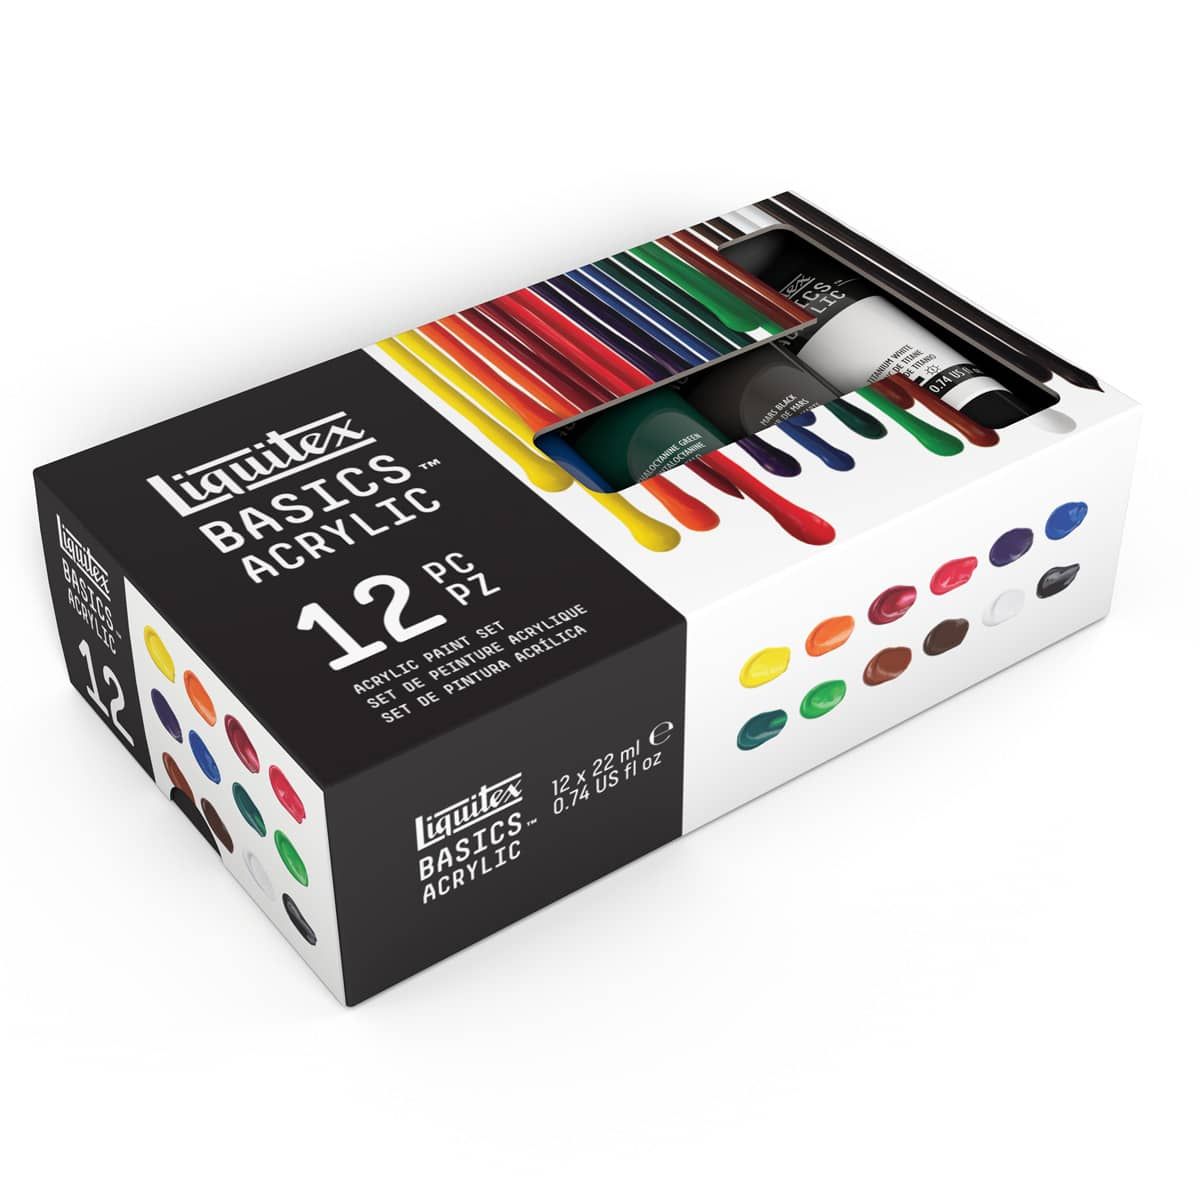 Liquitex BASICS Acrylic Paint Set, 72 x 22ml (0.74-oz) Tube Paint Set